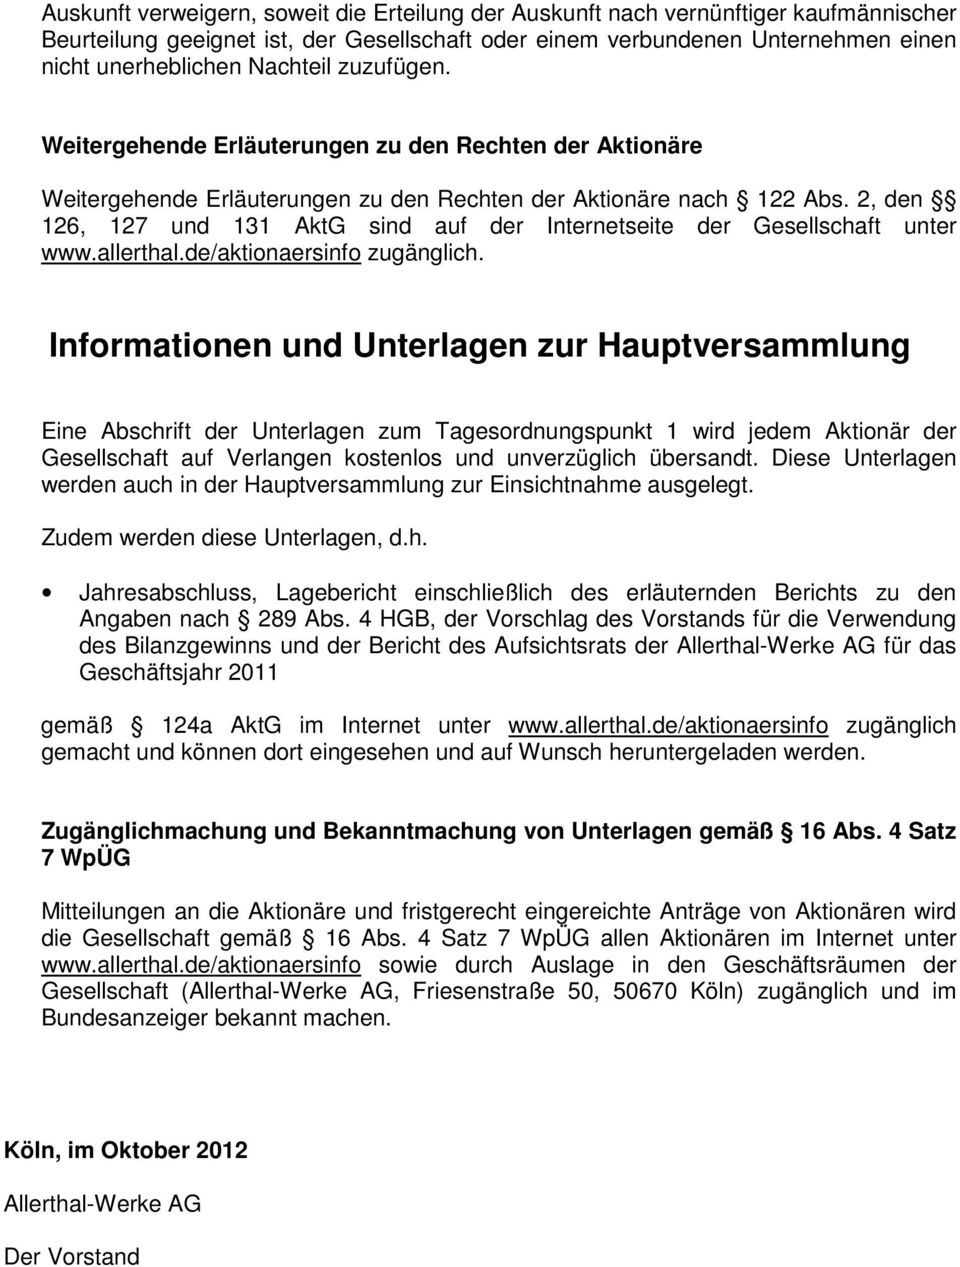 2, den 126, 127 und 131 AktG sind auf der Internetseite der Gesellschaft unter www.allerthal.de/aktionaersinfo zugänglich.